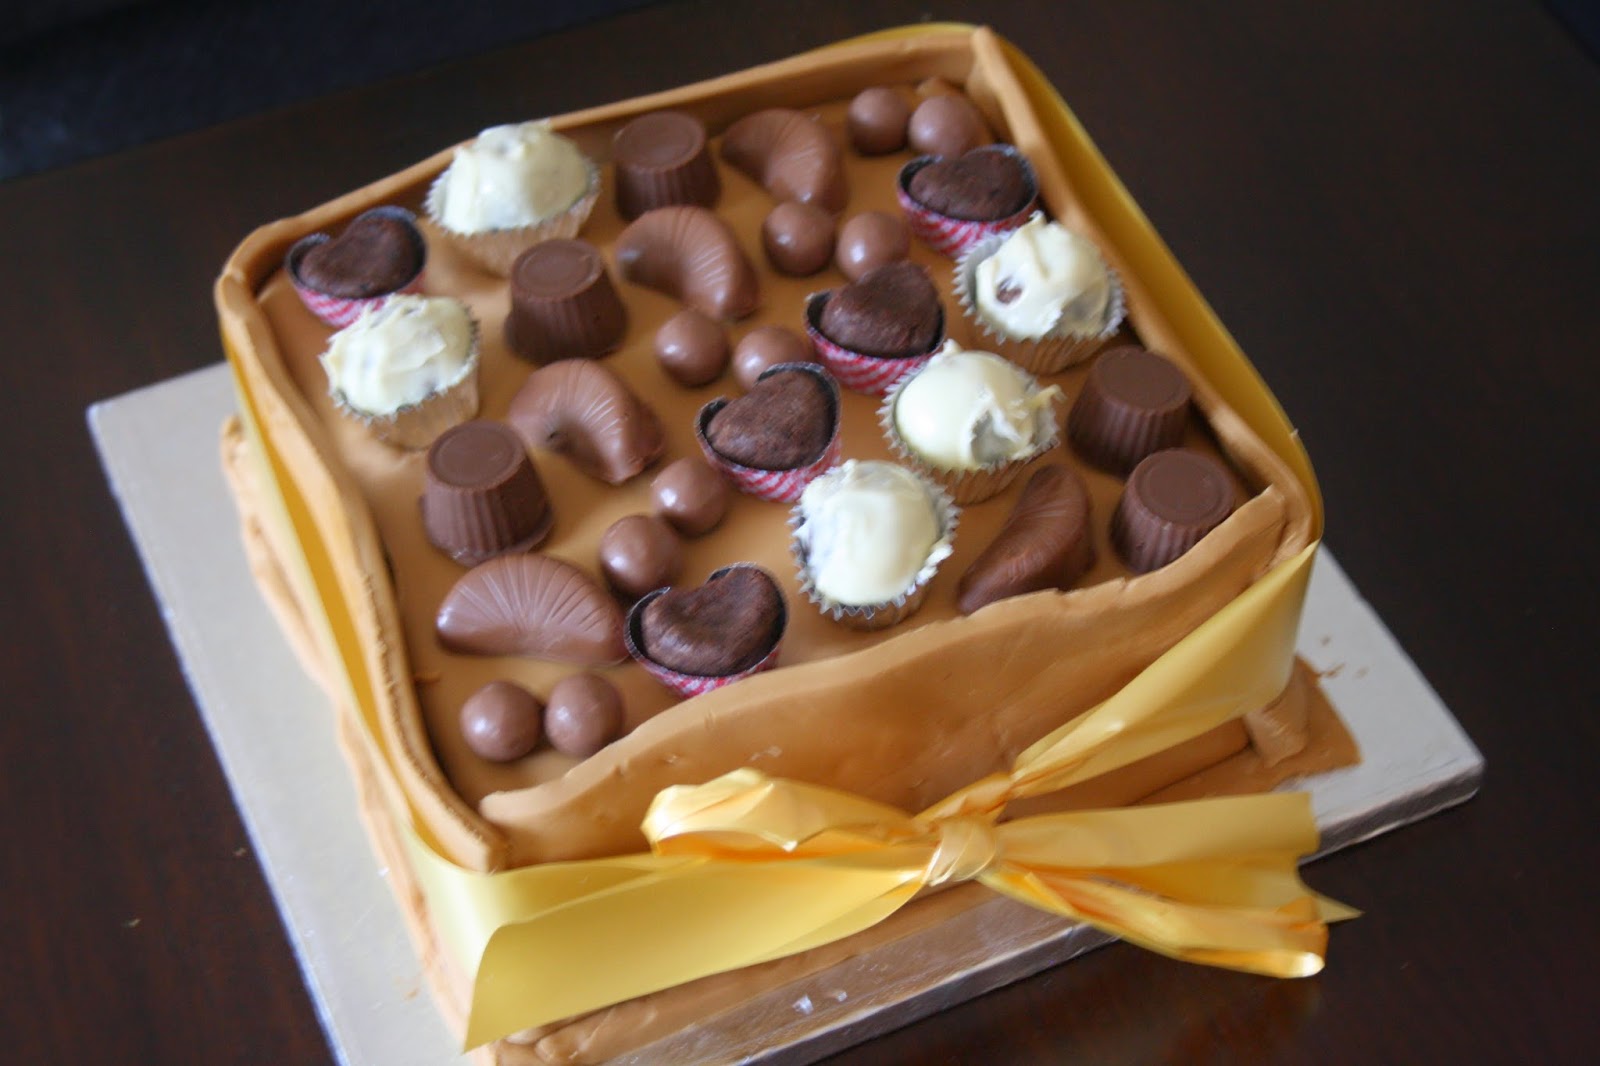 chocolate box cake